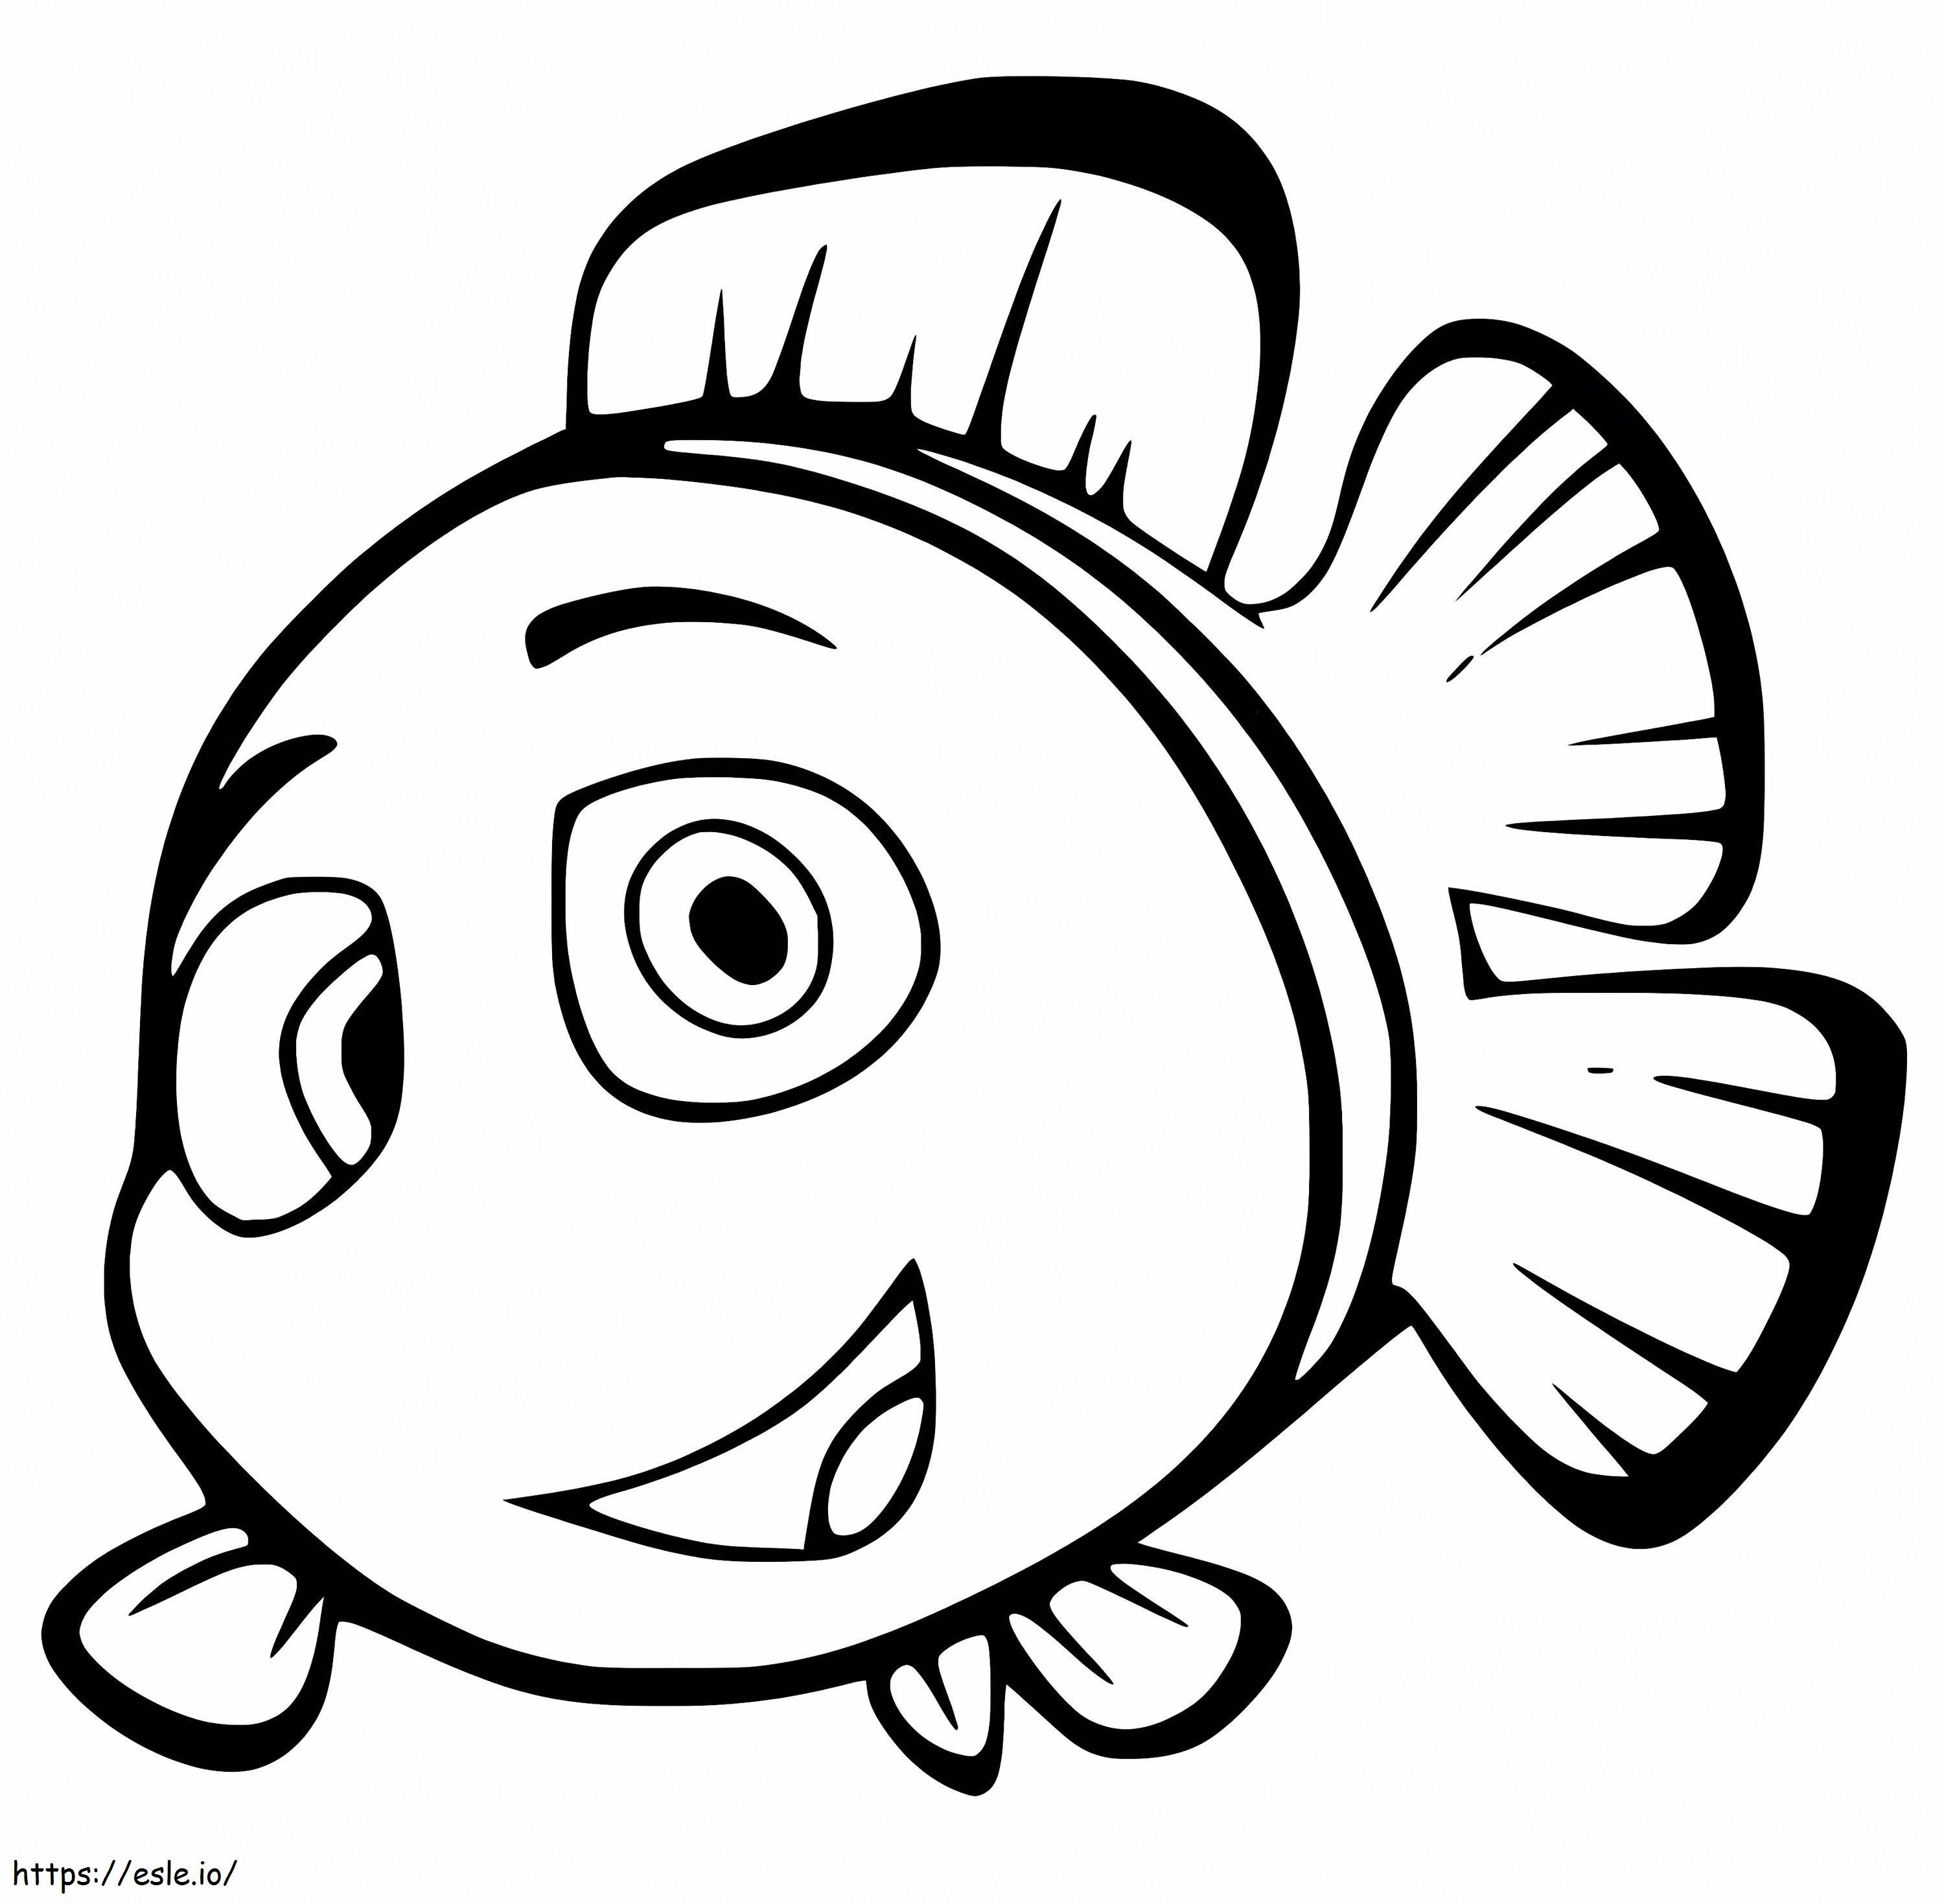 Peixe-palhaço de desenho animado para colorir